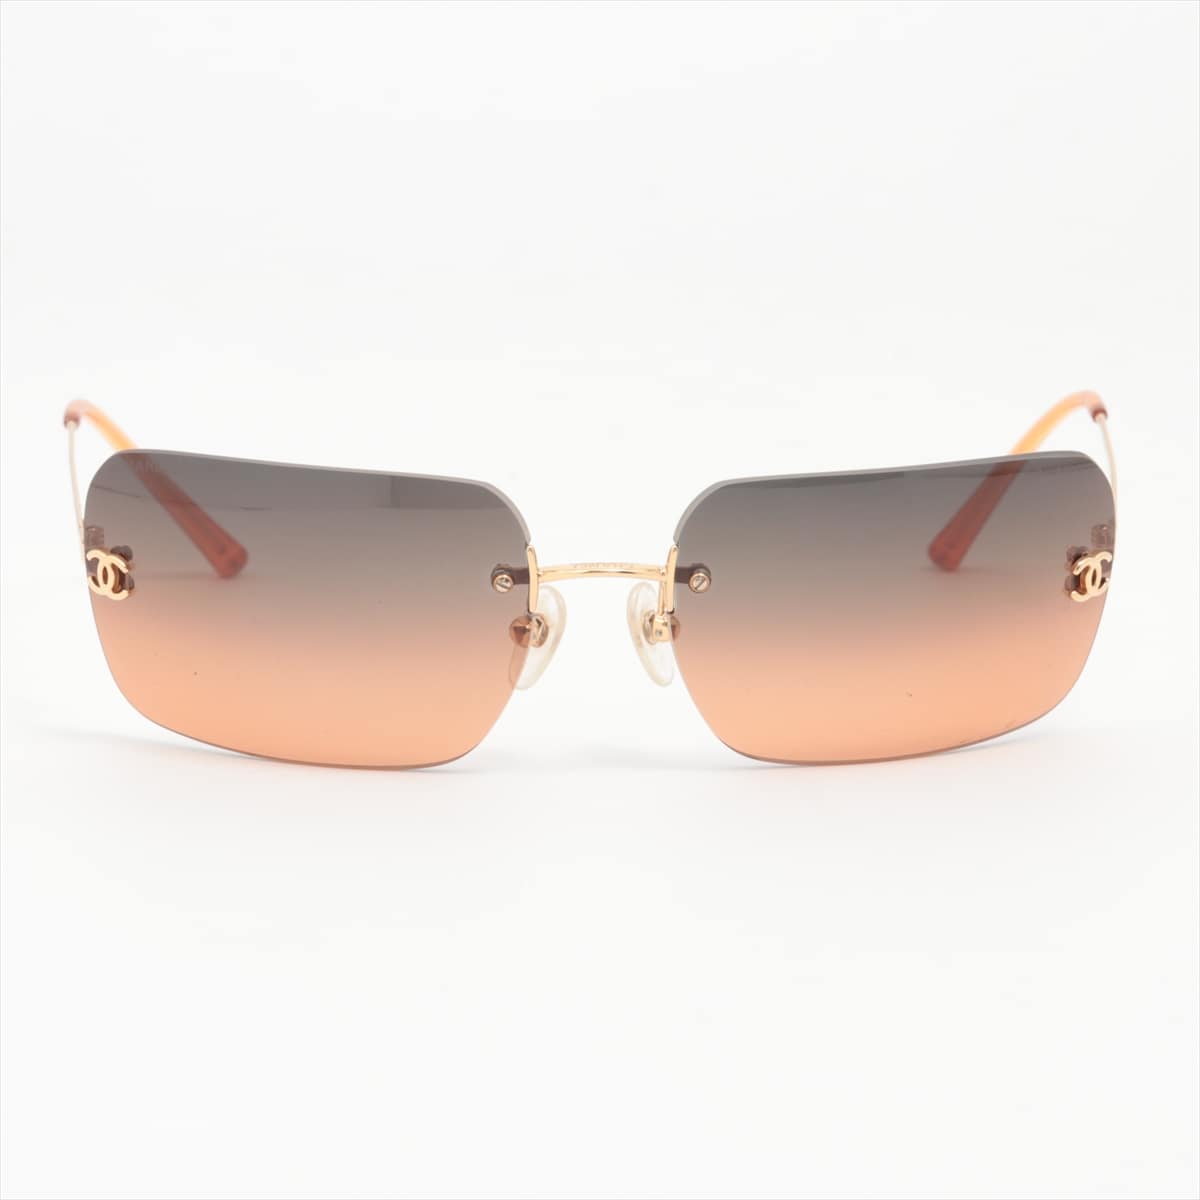 Chanel 4017 Coco Mark Sunglasses Plastic Brown